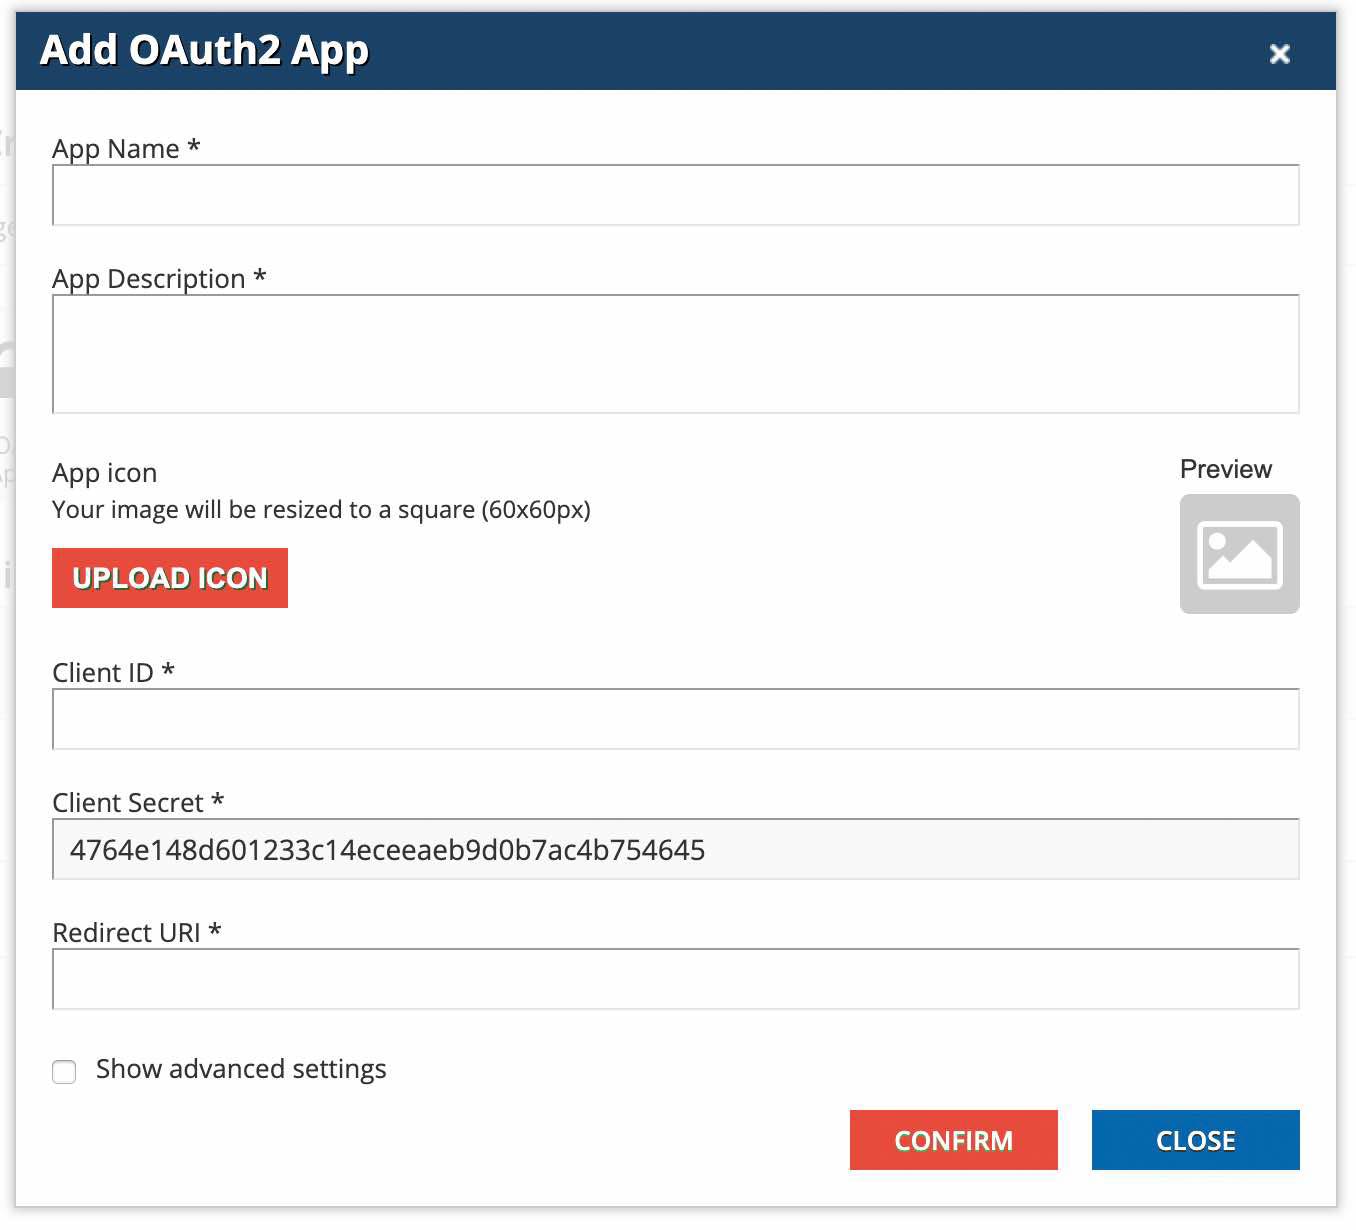 Add OAuth2 App popup